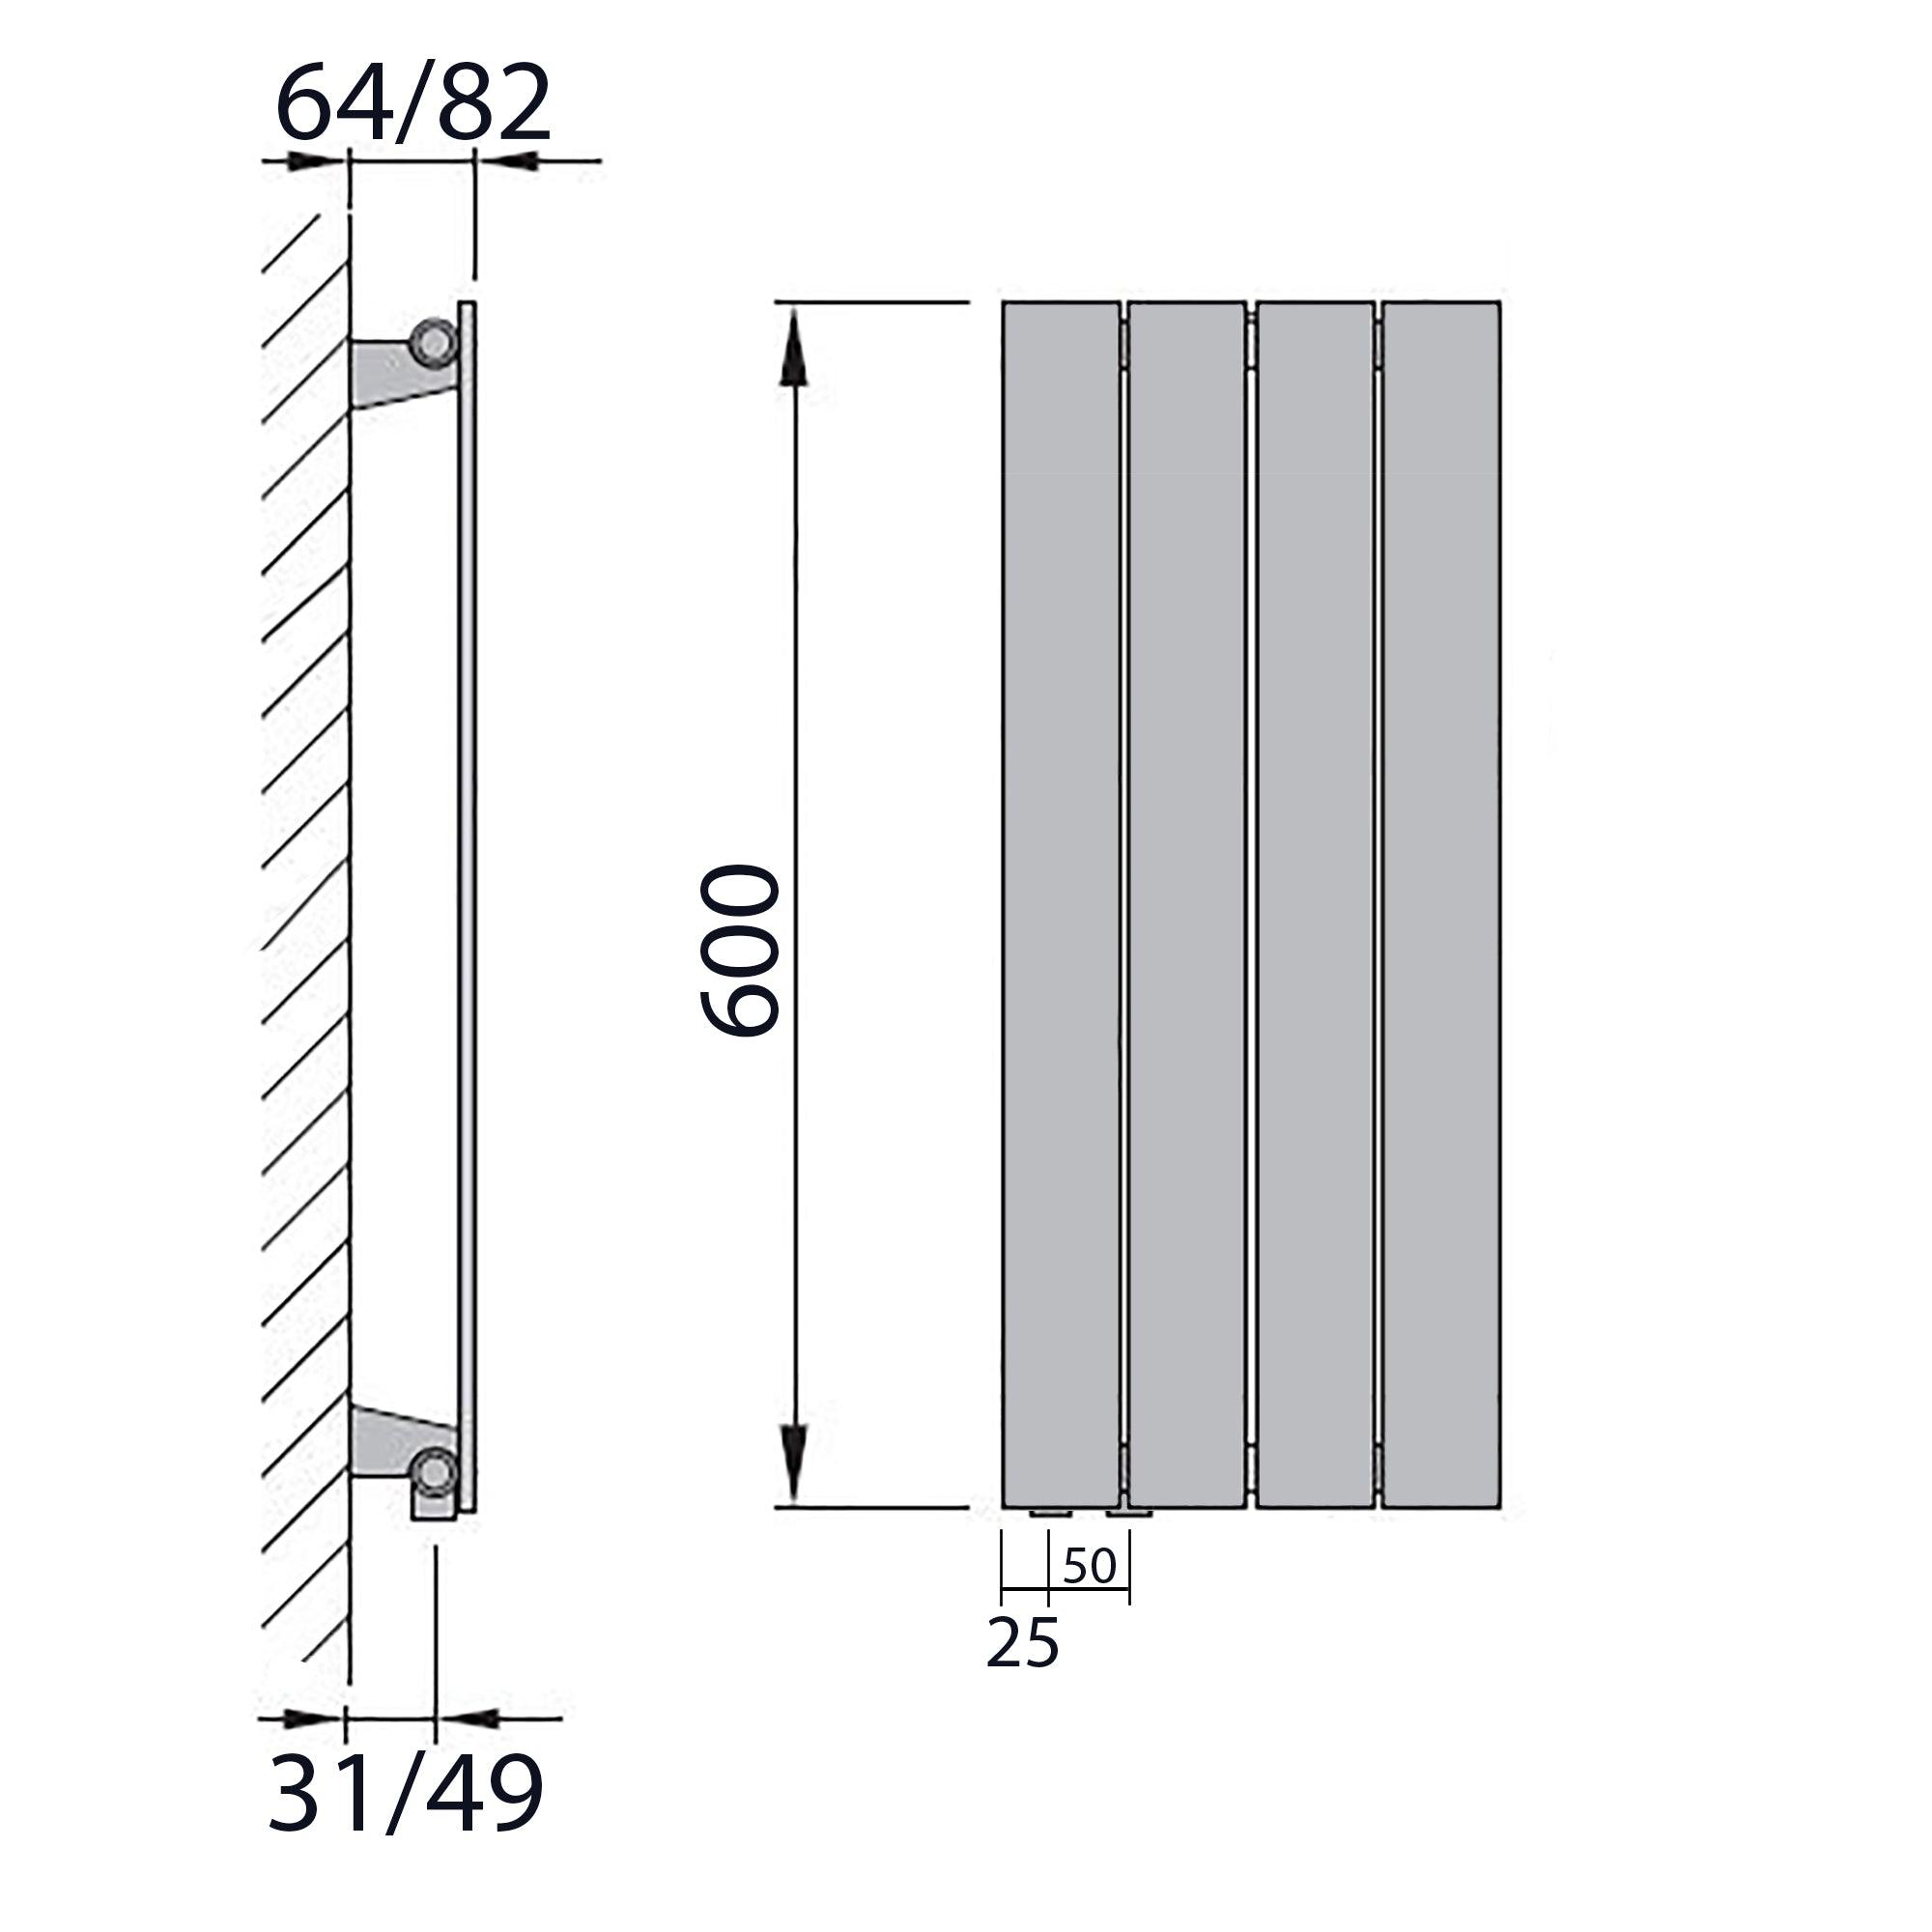 Design Paneelheizkörper Bad Flachheizkörper 600 x 298 mit Anschluss links | mit versetztem Mittelanschluss flach technische Zeichnung - heizkoerper.shop